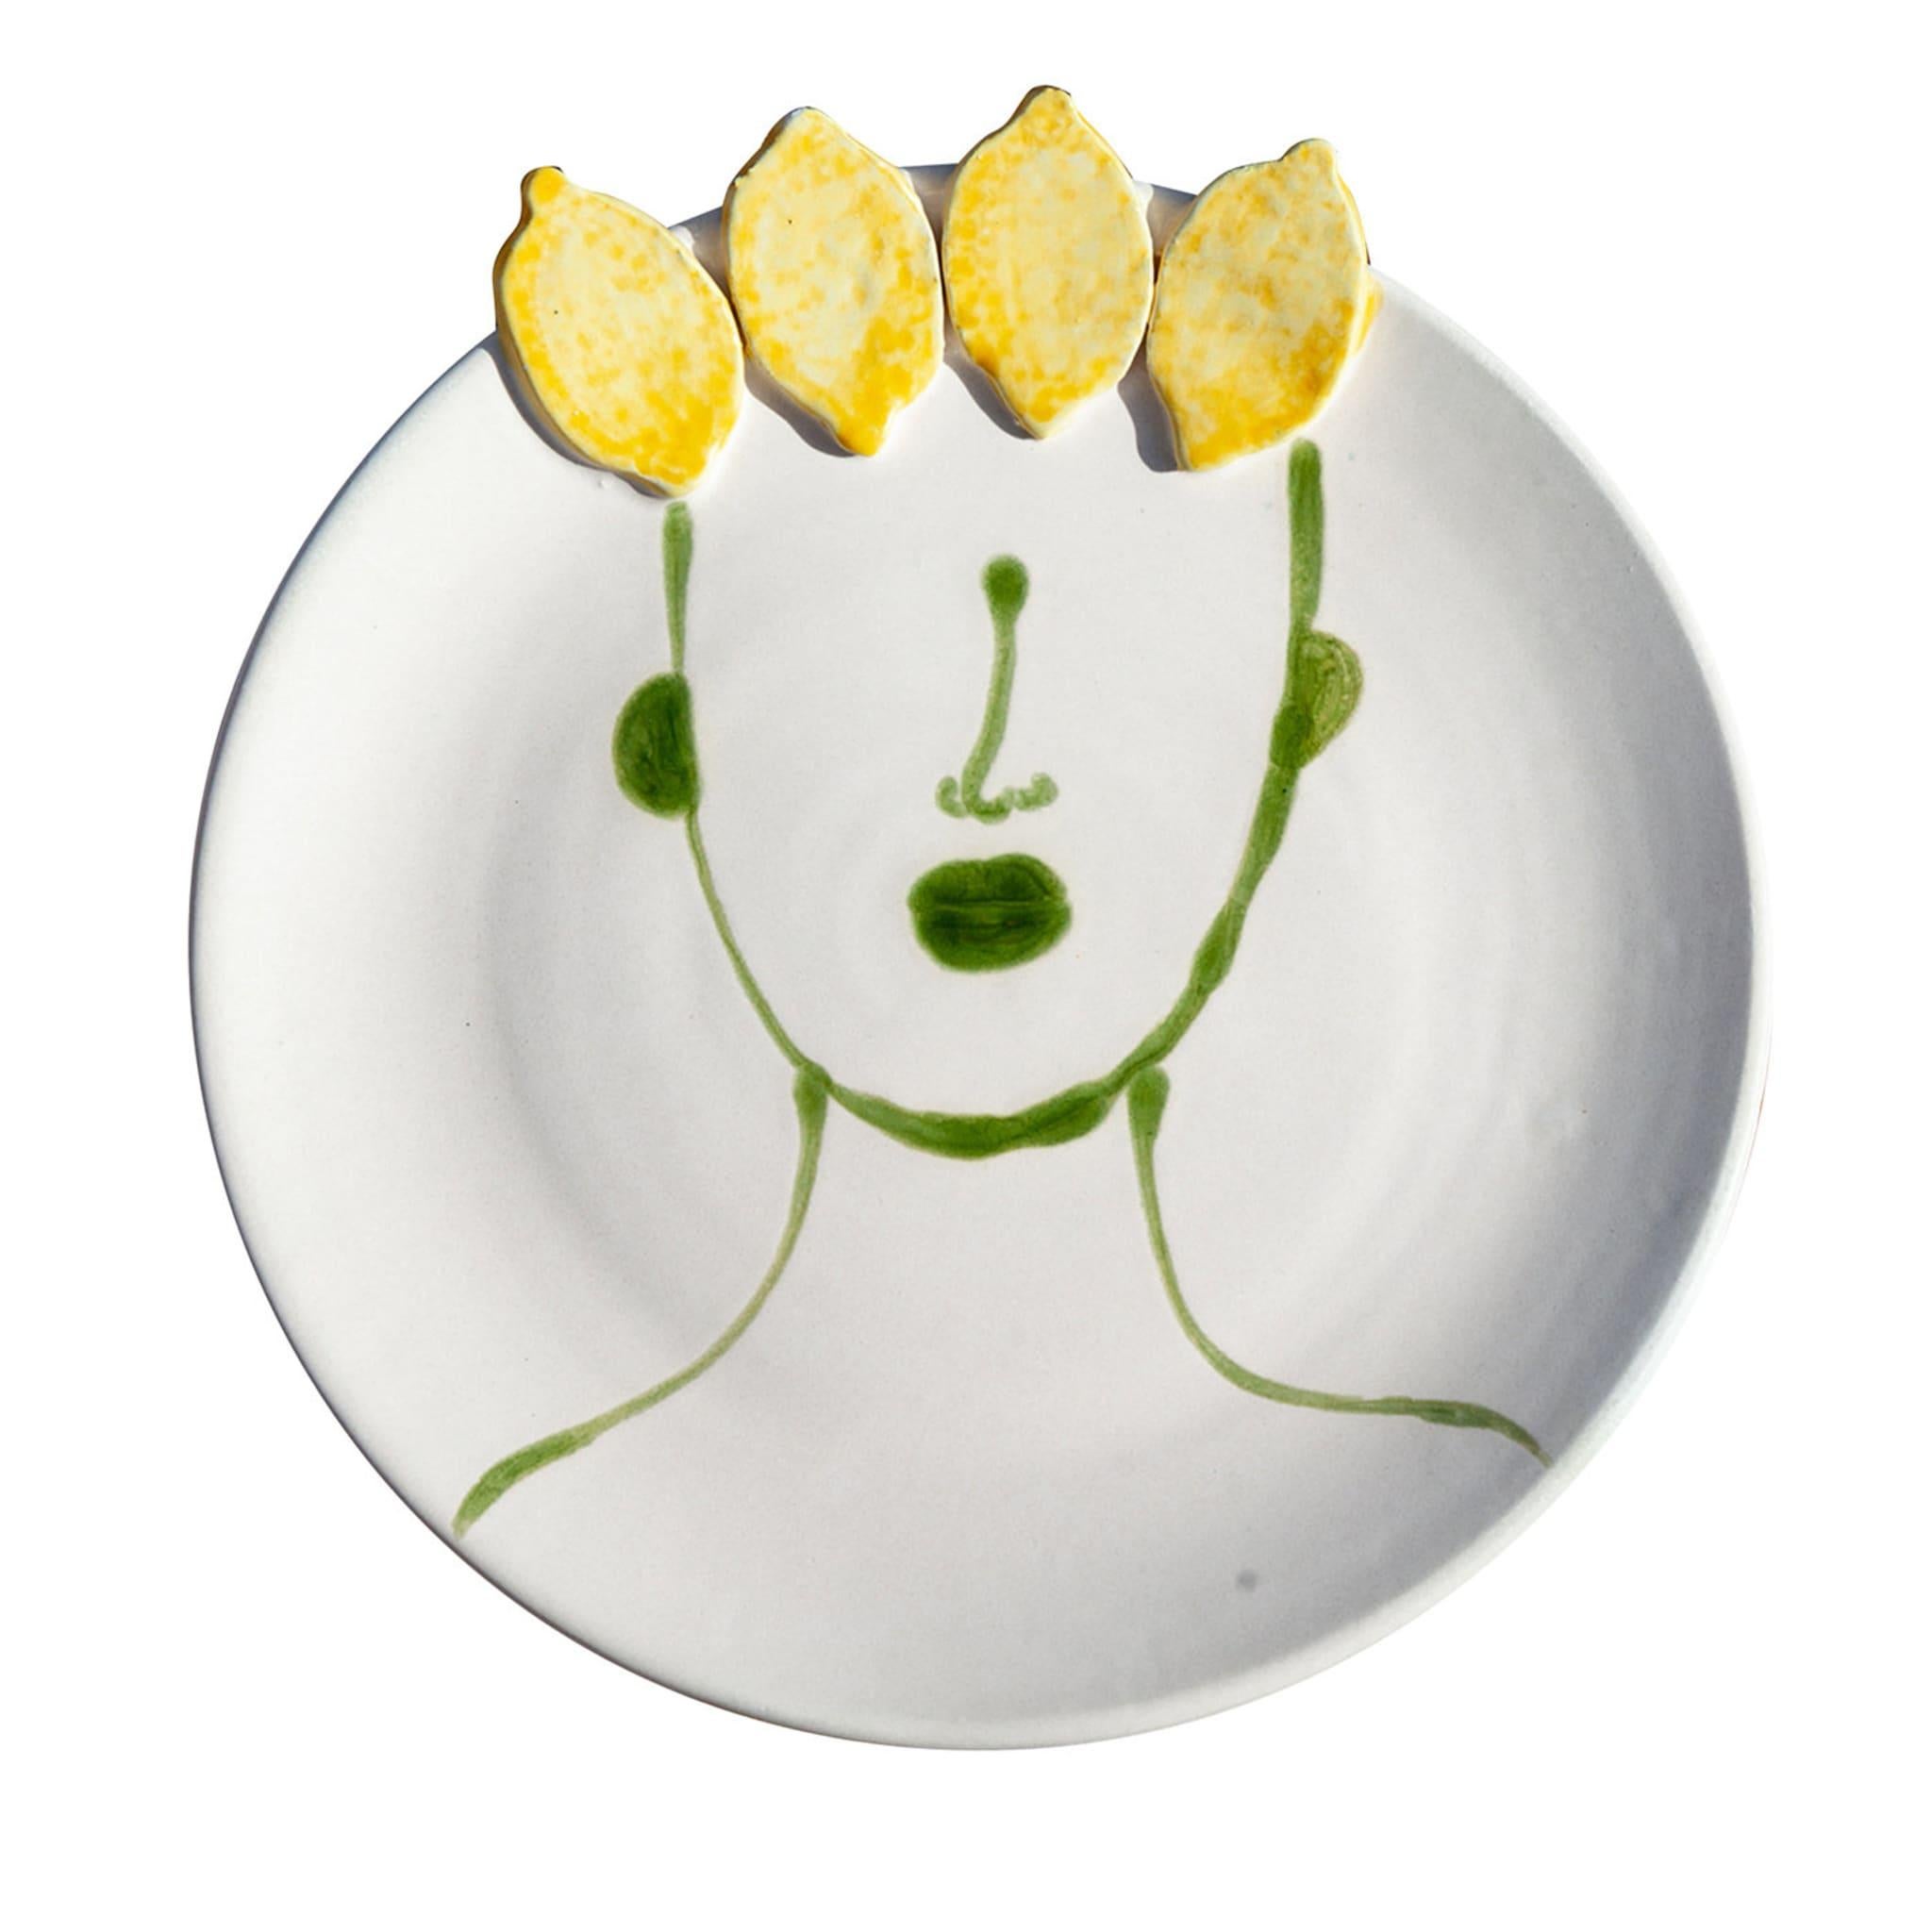 Le flair naturel de la Sicile rendu par des symboles magistralement interprétés et une sensibilité artistique frappante : ce set de deux assiettes en céramique émaillée blanc mat arbore le décor vert d'un profil humain stylisé, dont les cheveux sont